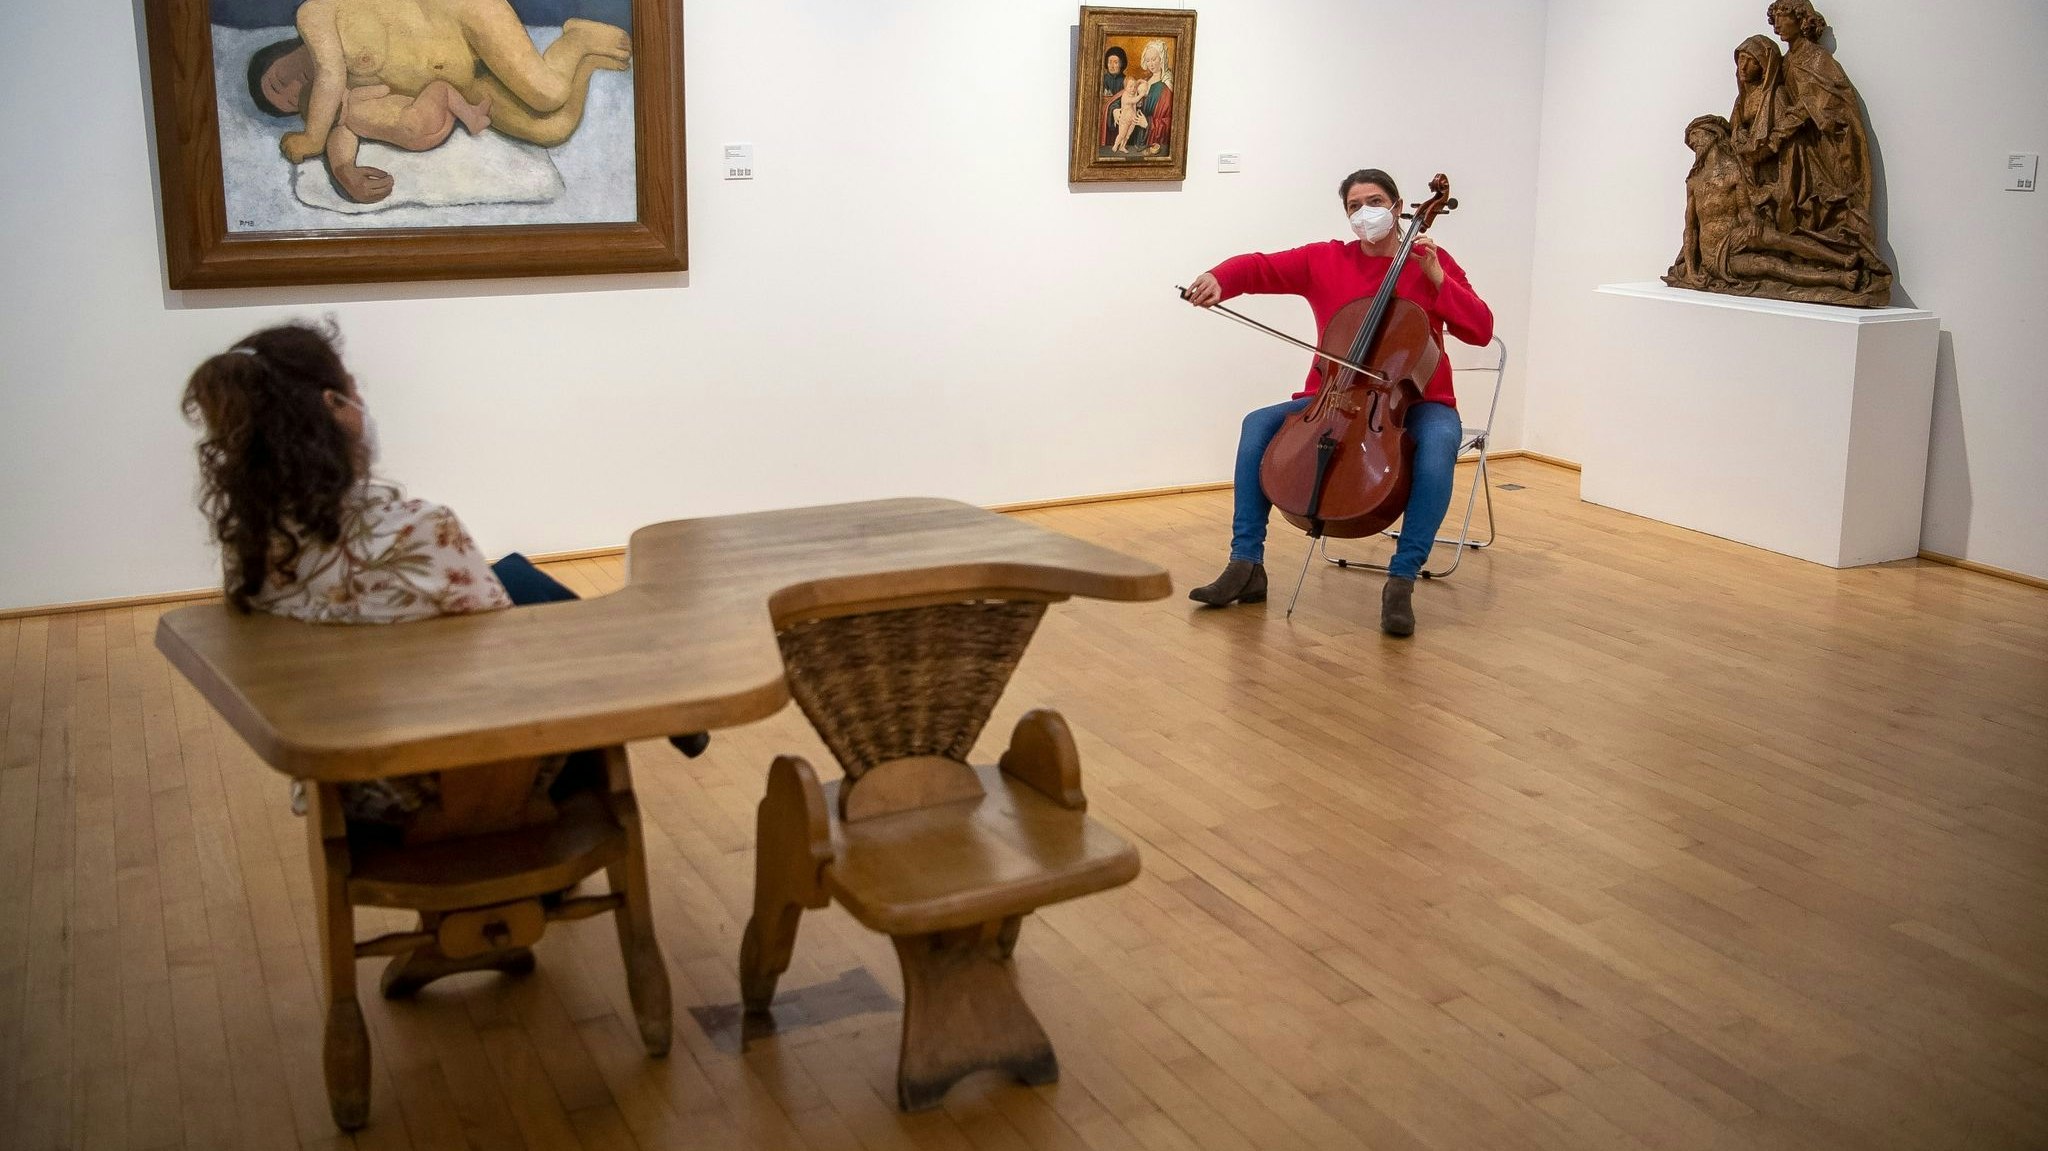 Hanna Weber, Musikerin bei den Bremer Philharmonikern, spielt Cello im Paula Modersohn-Becker Museum. Foto: Sina Schuldt / dpa